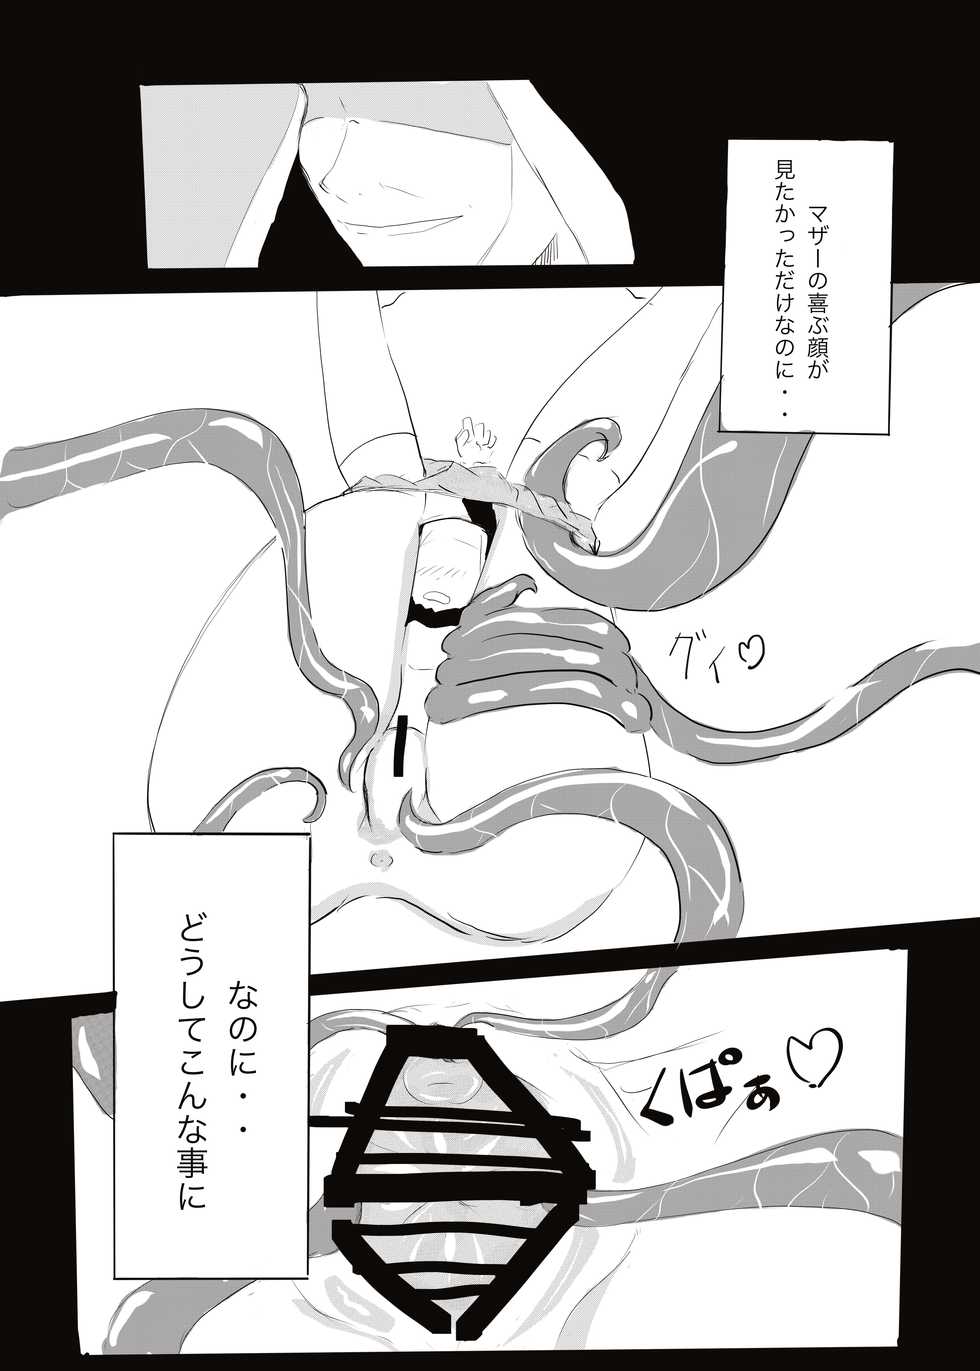 [cappuccino] Akuma vs Exorcist - Page 18